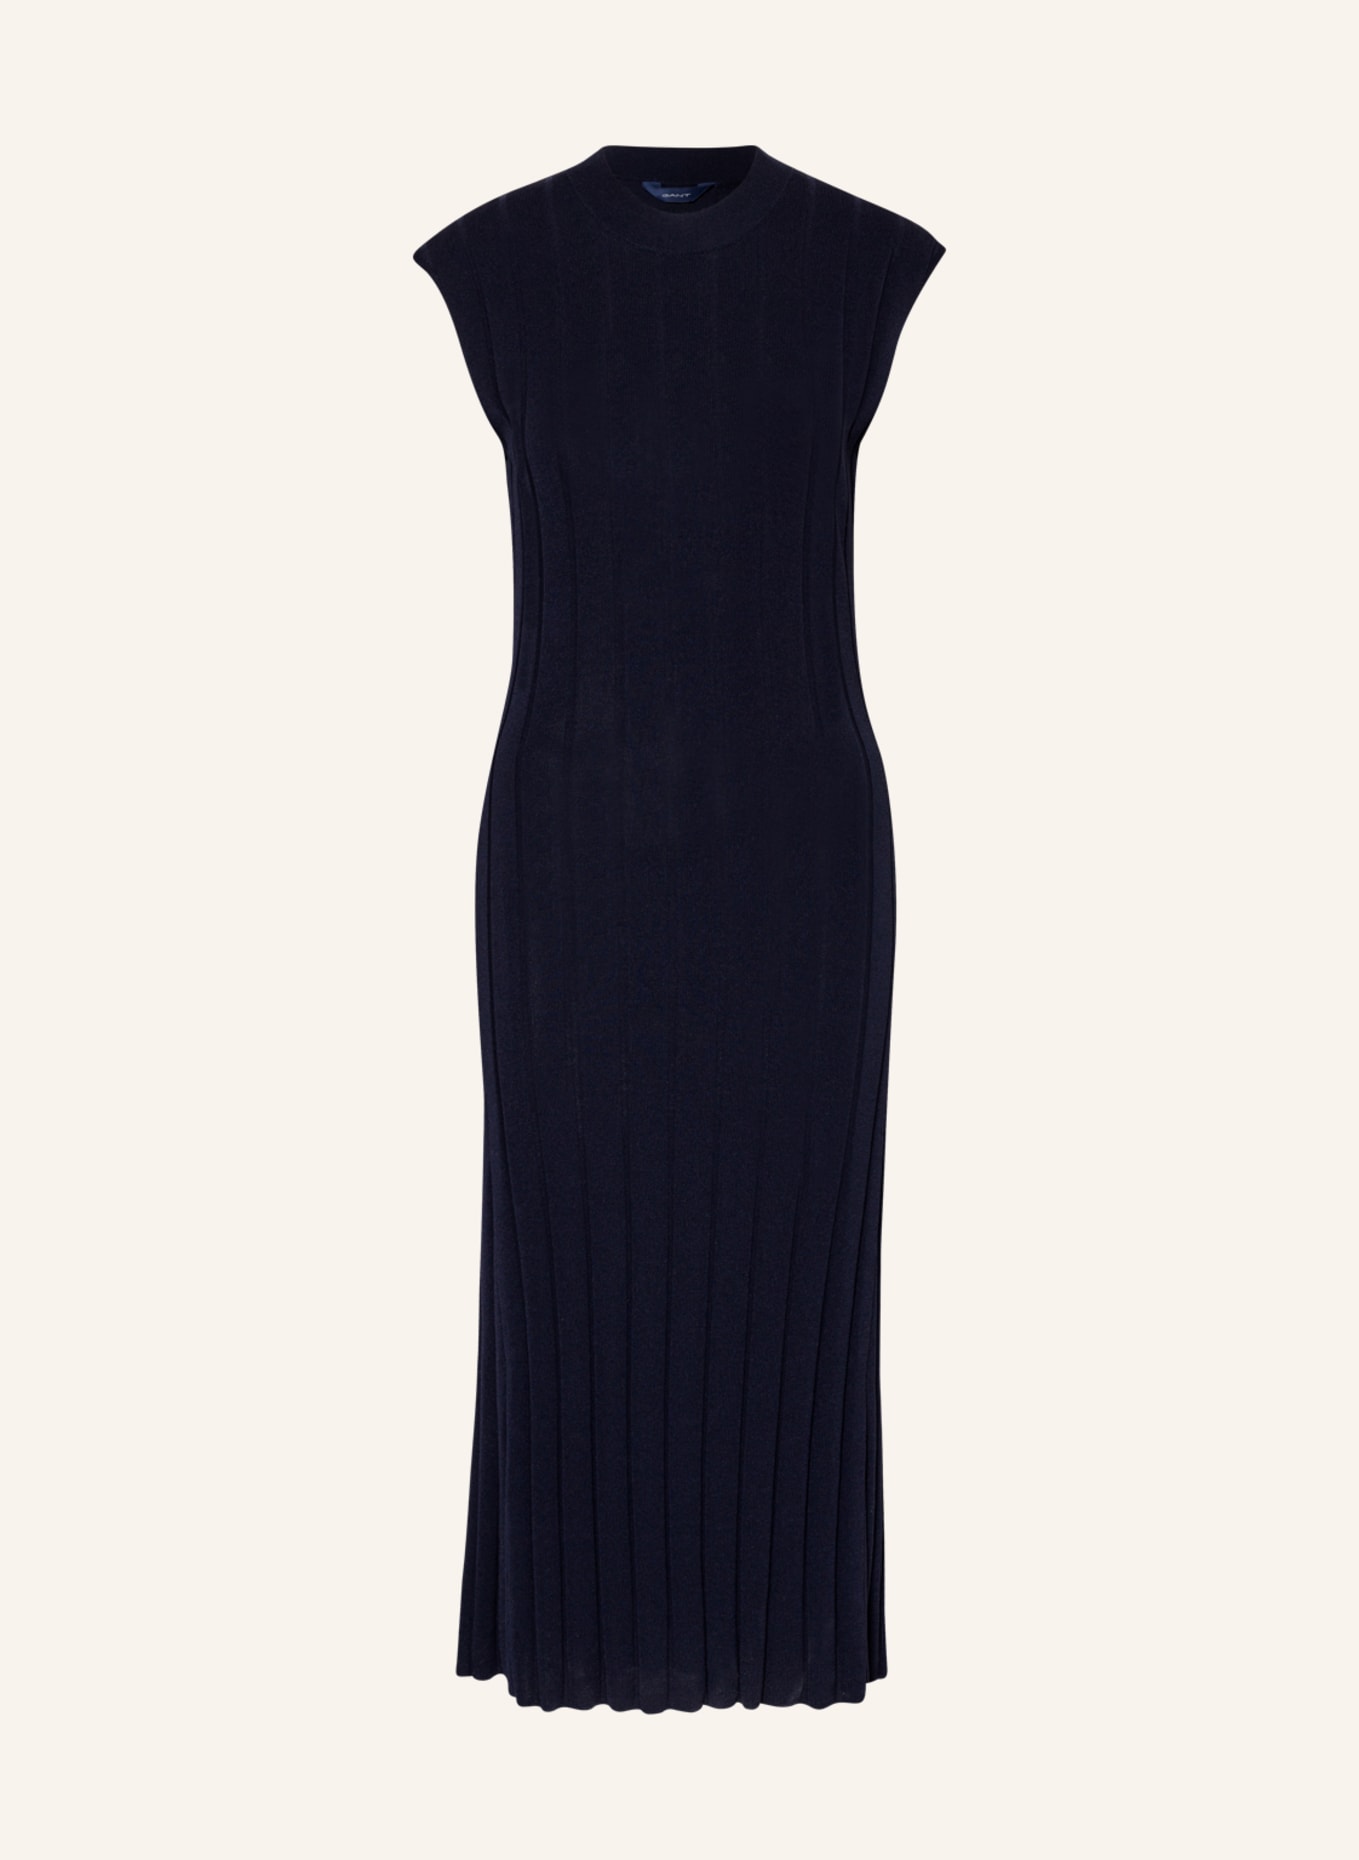 GANT Knit dress, Color: DARK BLUE (Image 1)